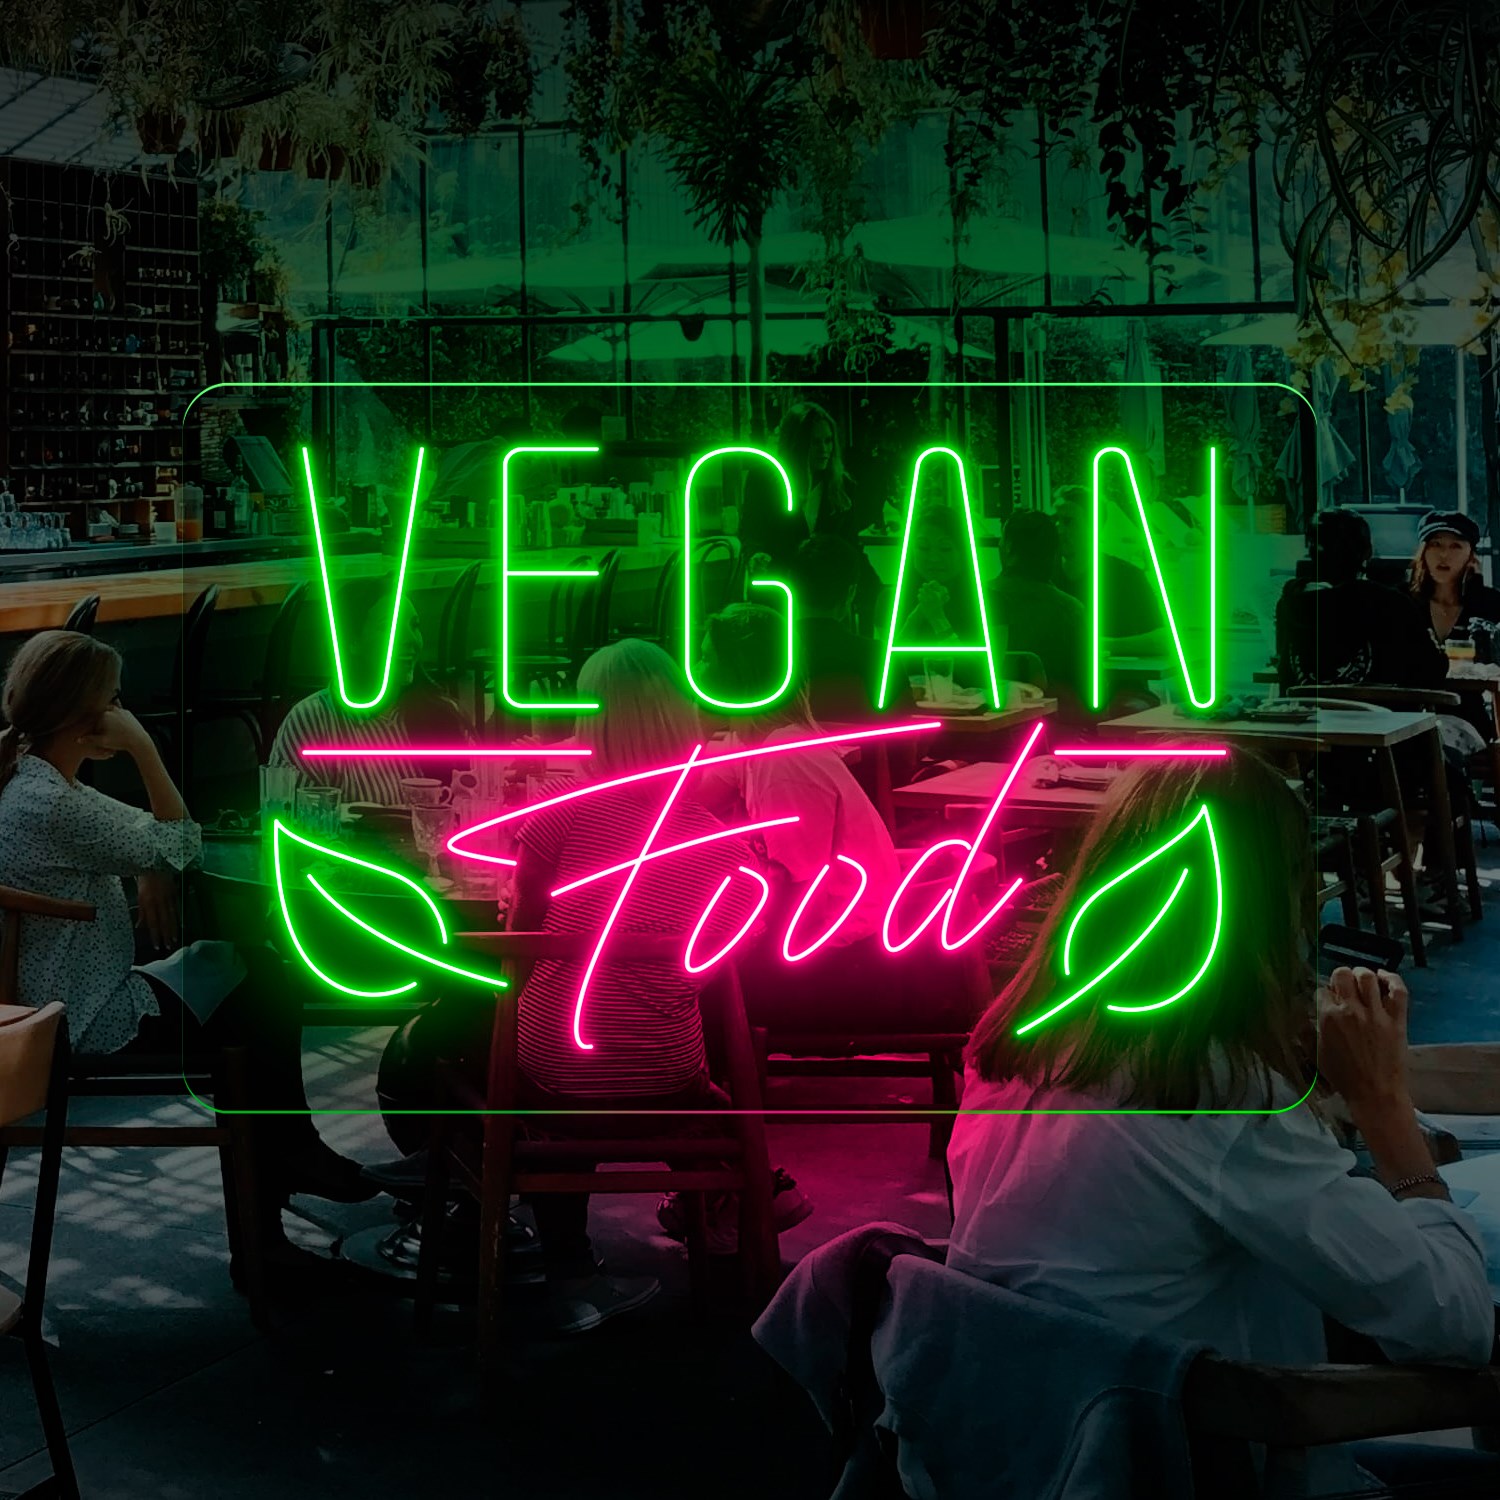 Immagine di Neon per ristorante "Vegan Food"